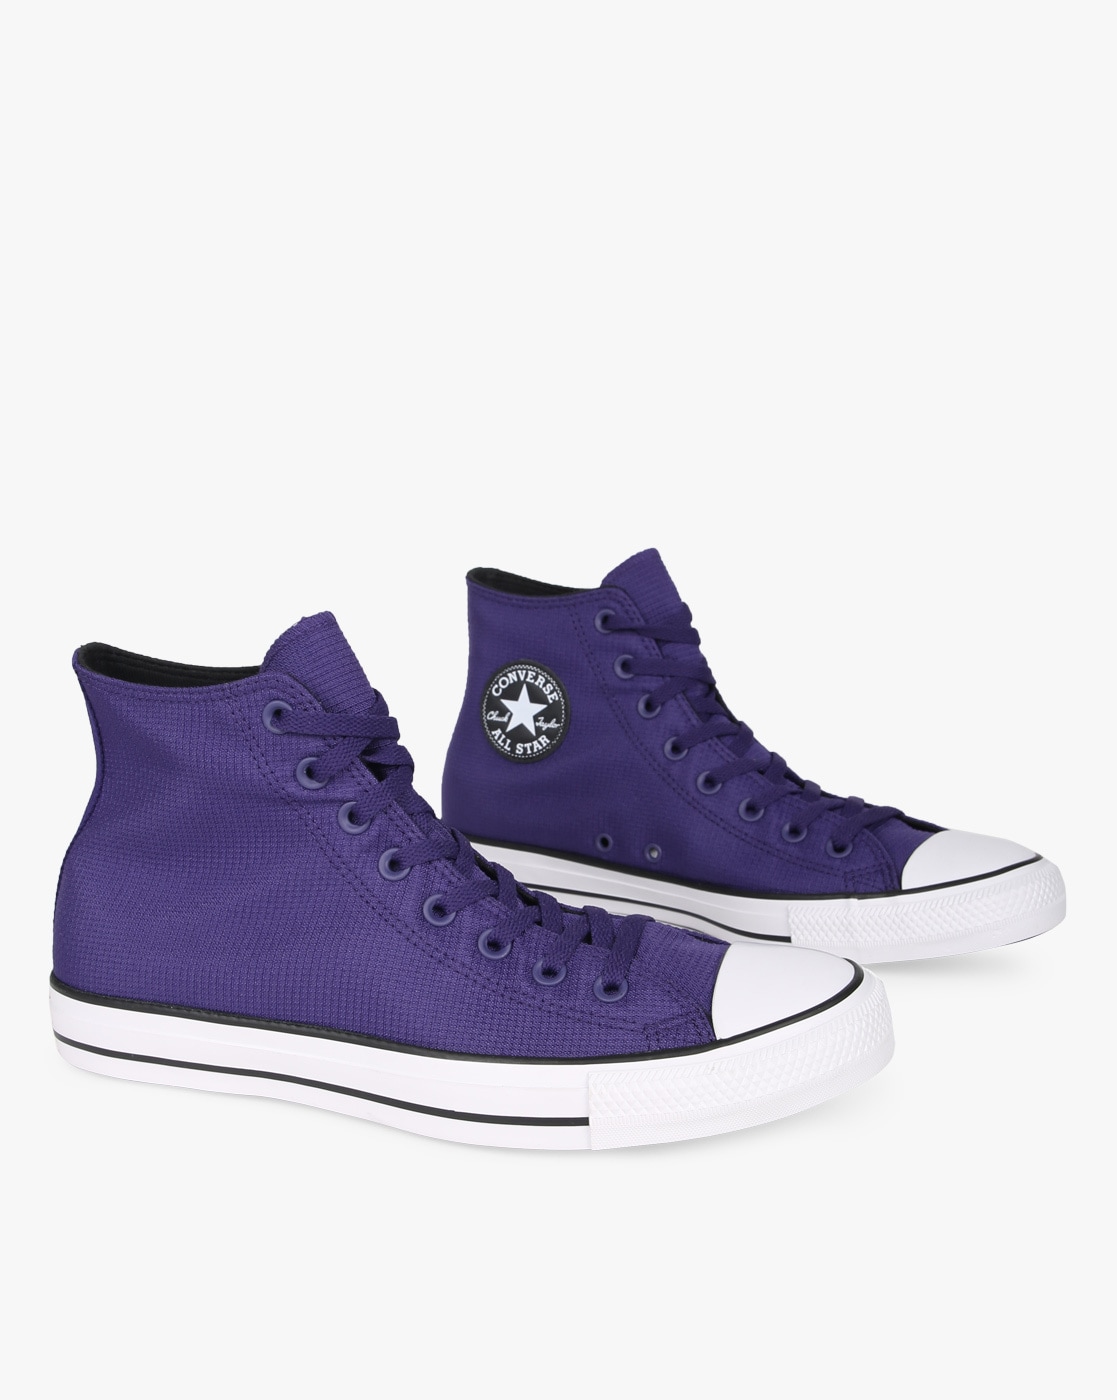 converse purple laces